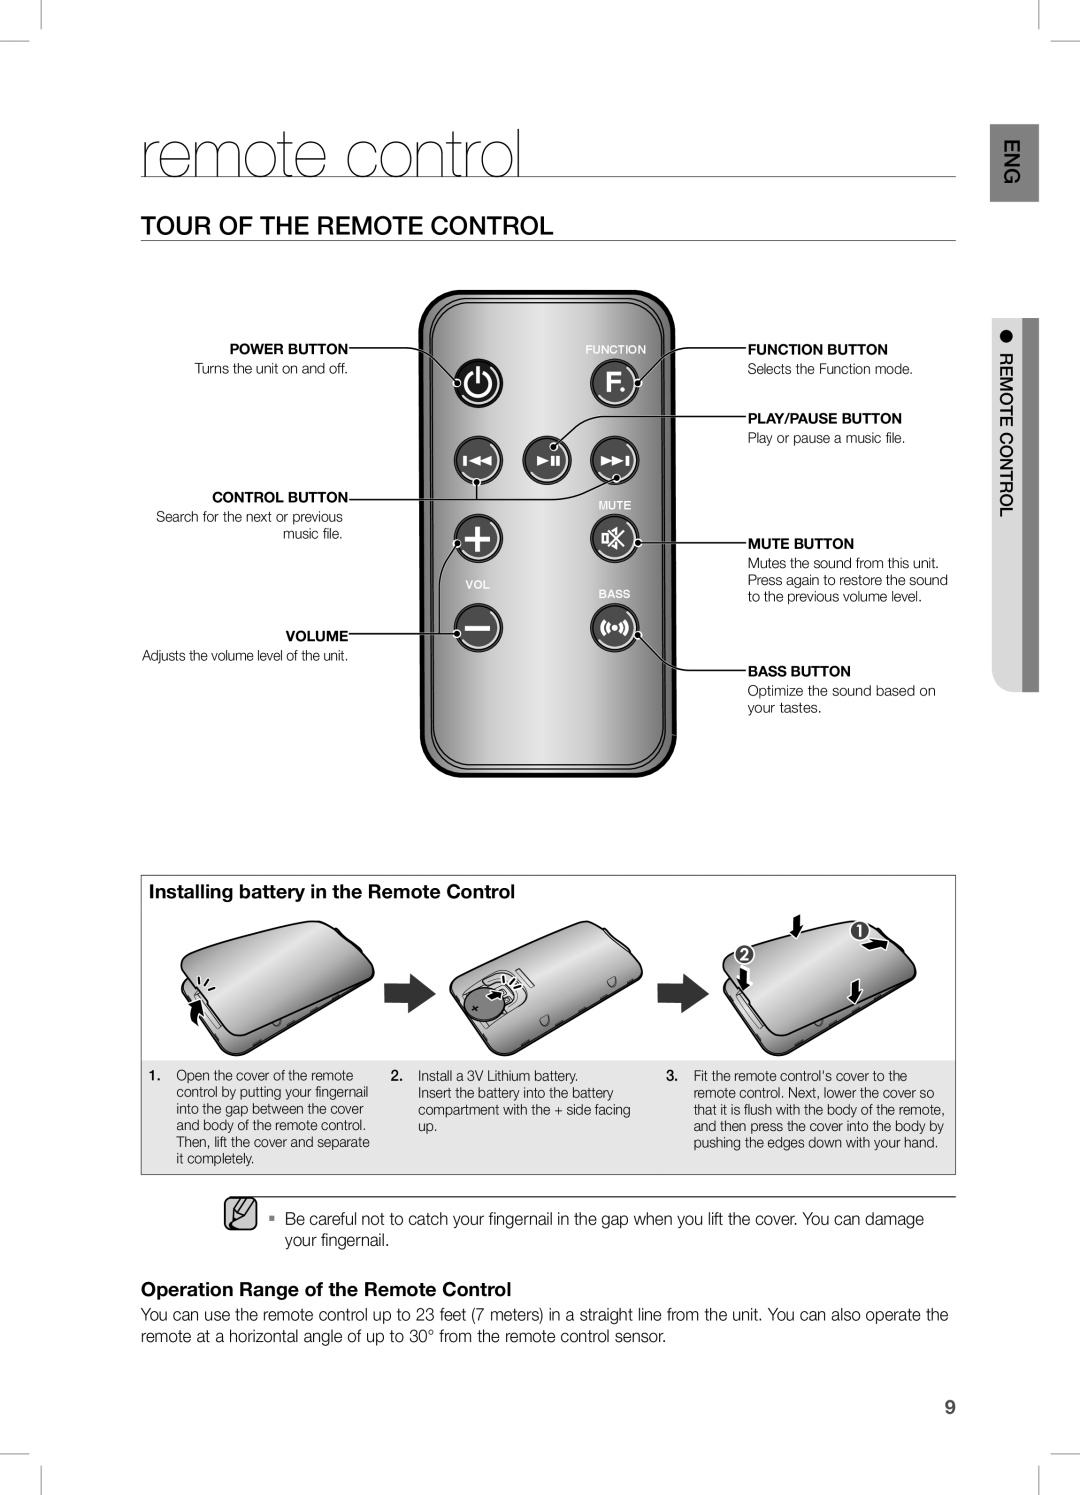 Samsung DA-E570 user manual remote control, Tour of the Remote Control, Installing battery in the Remote Control 